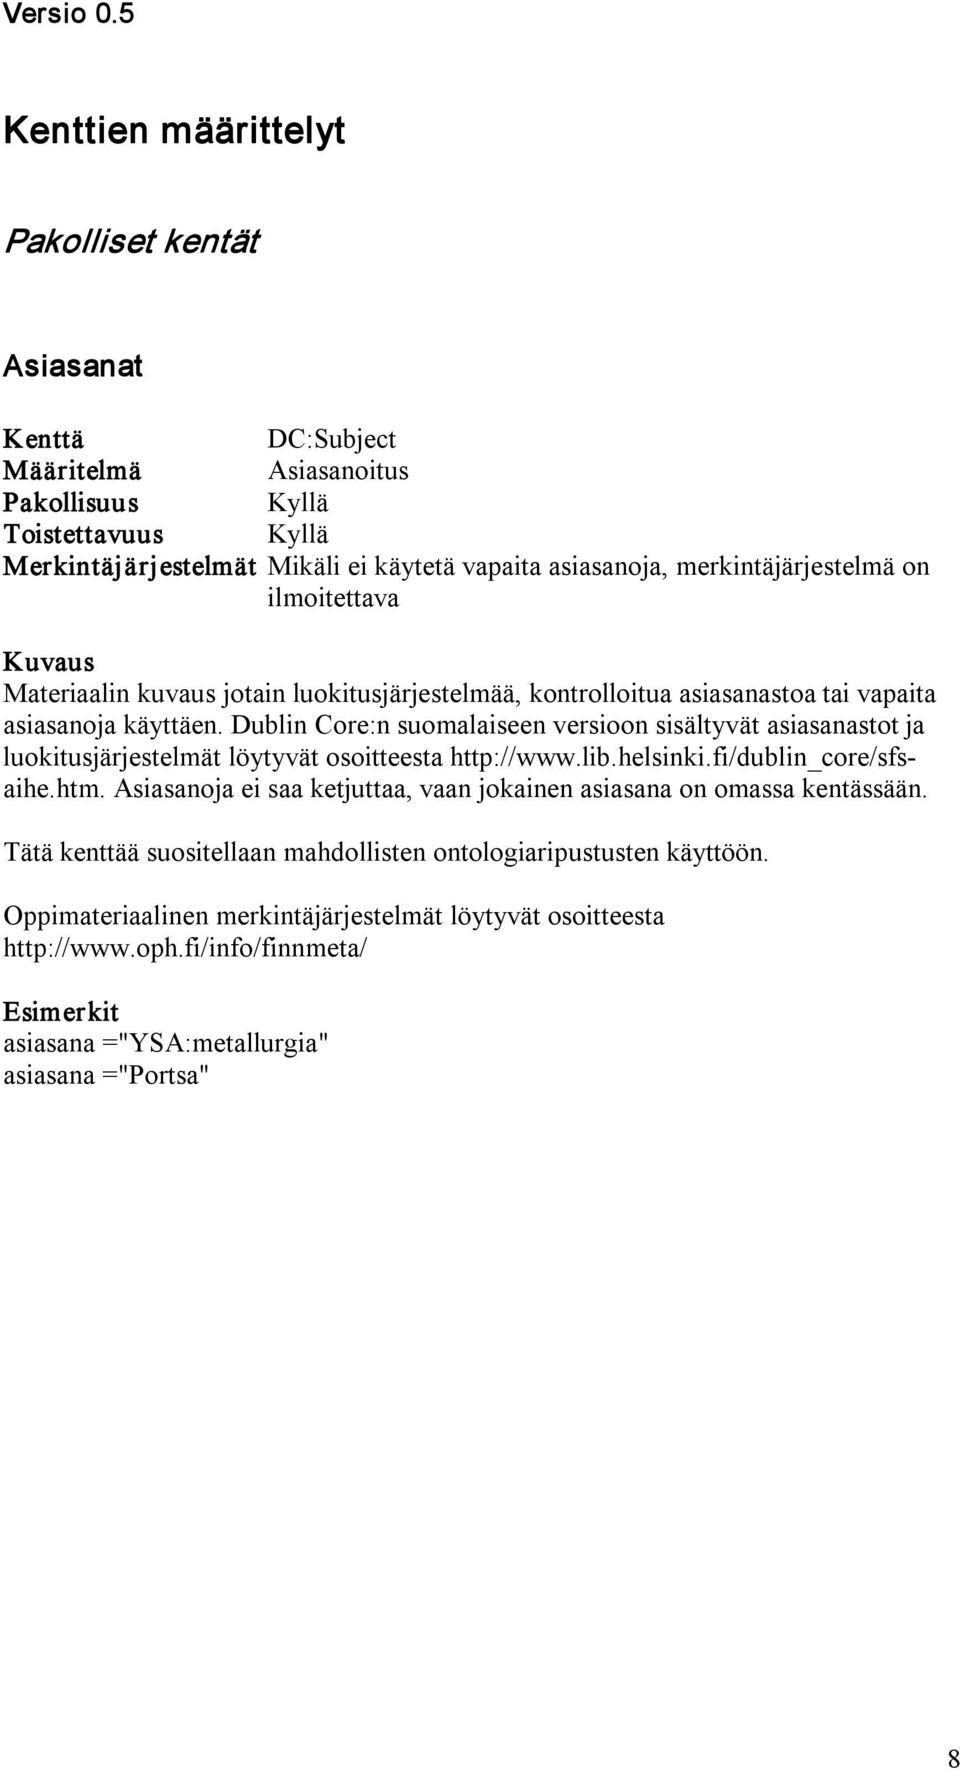 Dublin Core:n suomalaiseen versioon sisältyvät asiasanastot ja luokitusjärjestelmät löytyvät osoitteesta http://www.lib.helsinki.fi/dublin_core/sfsaihe.htm.